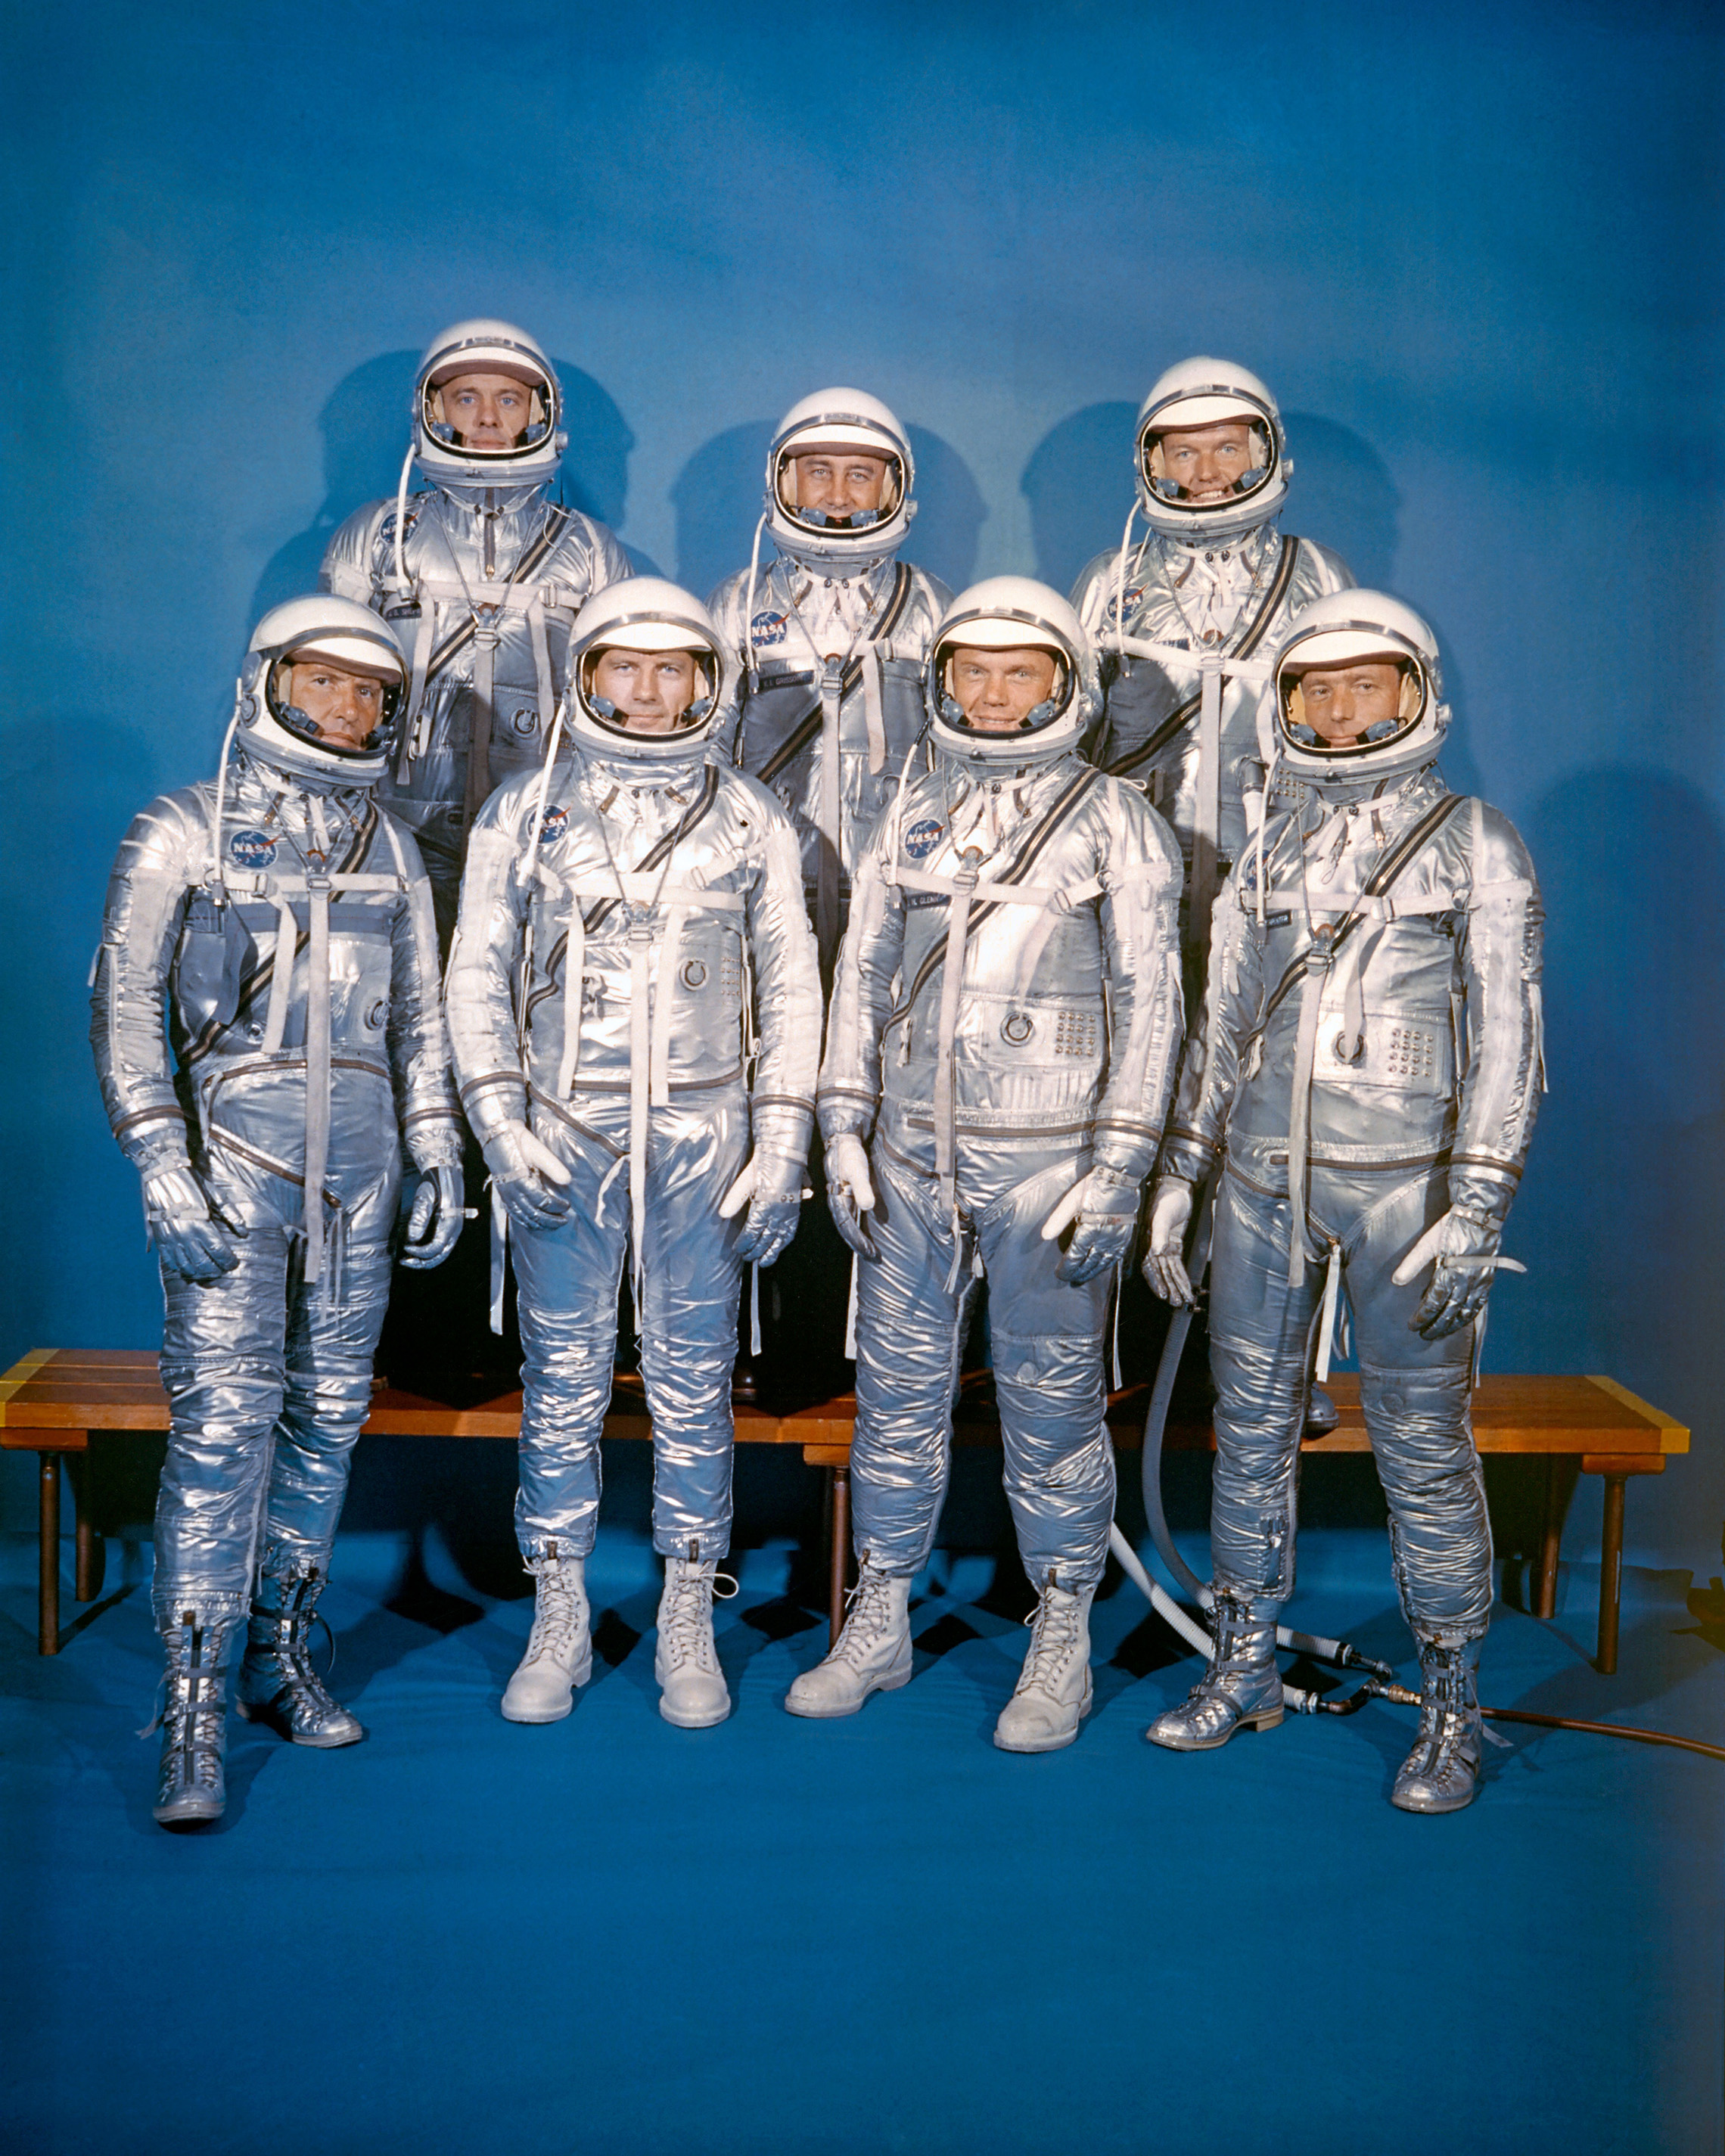 9 kwietnia 1959 roku NASA wprowadziła pierwszą klasę astronautów, Mercury 7. Przedni rząd, od lewej do prawej: Walter M. Schirra, Jr., Donald K. "Deke" Slayton, John H. Glenn, Jr., and M. Scott Carpenter; tylny rząd, Alan B. Shepard, Jr., Virgil I. " Gus "Grissom, and L. Gordon Cooper, Jr. (NASA)"Deke" Slayton, John H. Glenn, Jr., and M. Scott Carpenter; back row, Alan B. Shepard, Jr., Virgil I. "Gus" Grissom, and L. Gordon Cooper, Jr. (NASA)